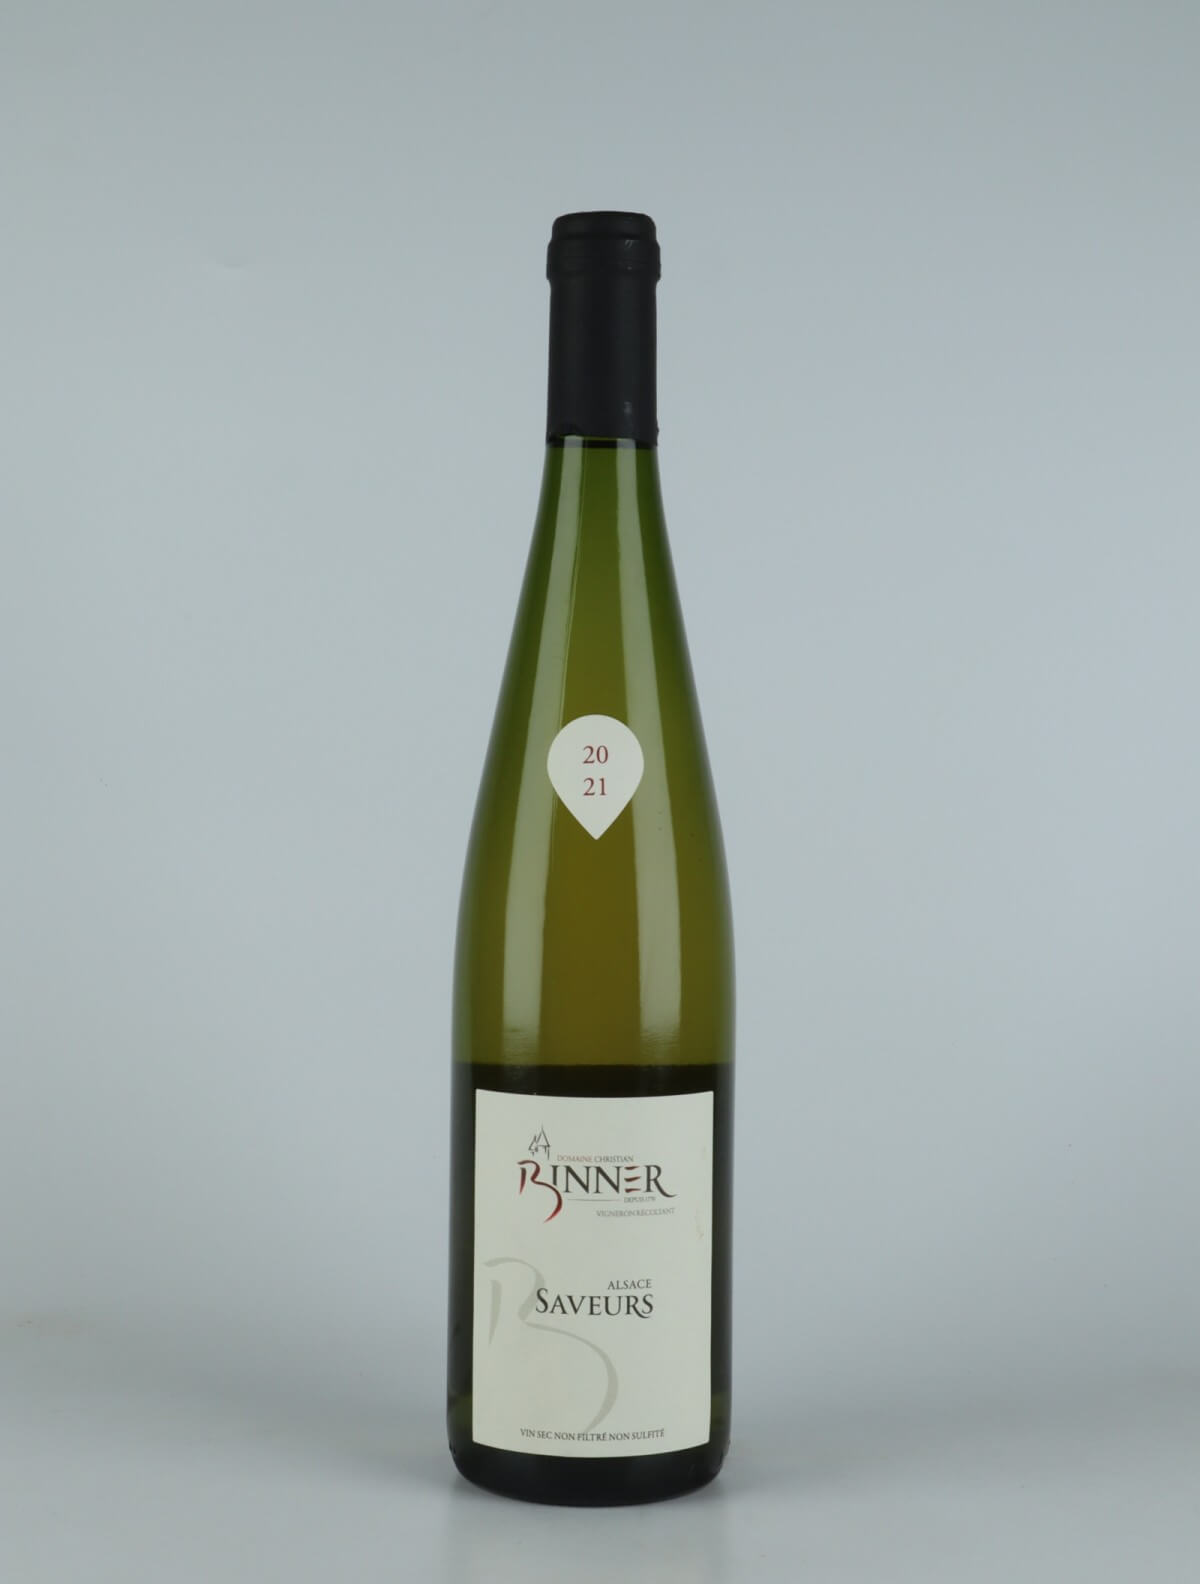 En flaske N.V. Saveurs (20/21) Hvidvin fra Domaine Christian Binner, Alsace i Frankrig